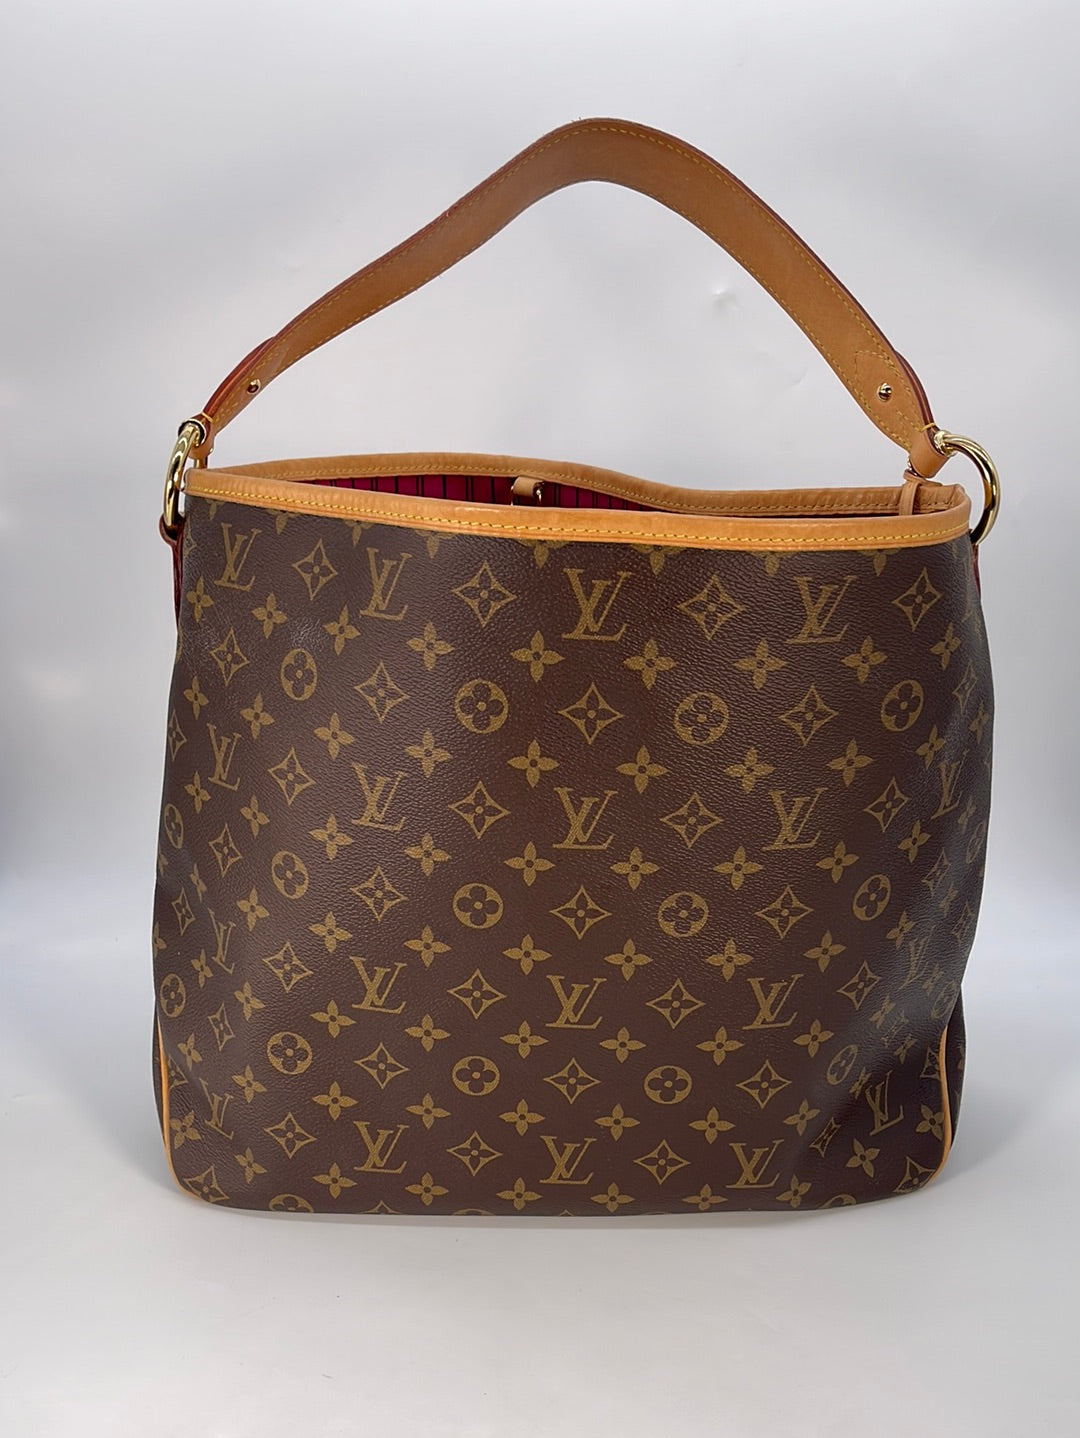 Louis Vuitton, Bags, Beautiful Louis Vuitton Lv Delightful Mm Shoulder  Bag